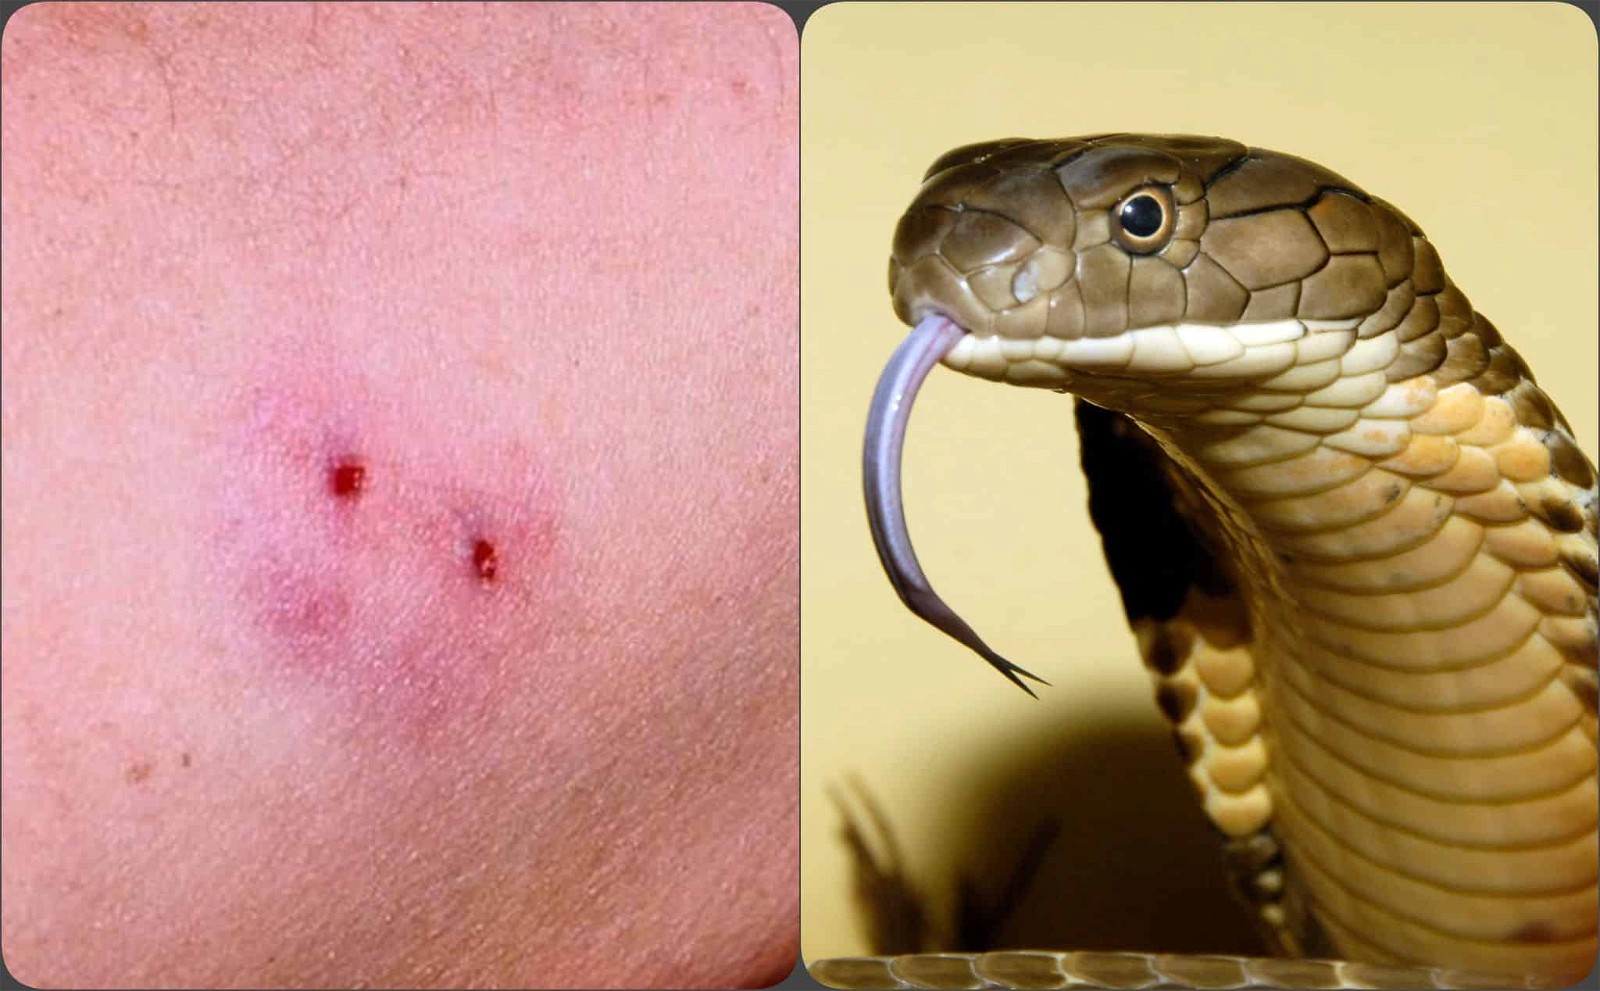 Nọc rắn có thể gây phá hủy hồng cầu và dẫn đến tình trạng nguy hiểm cho cơ thể